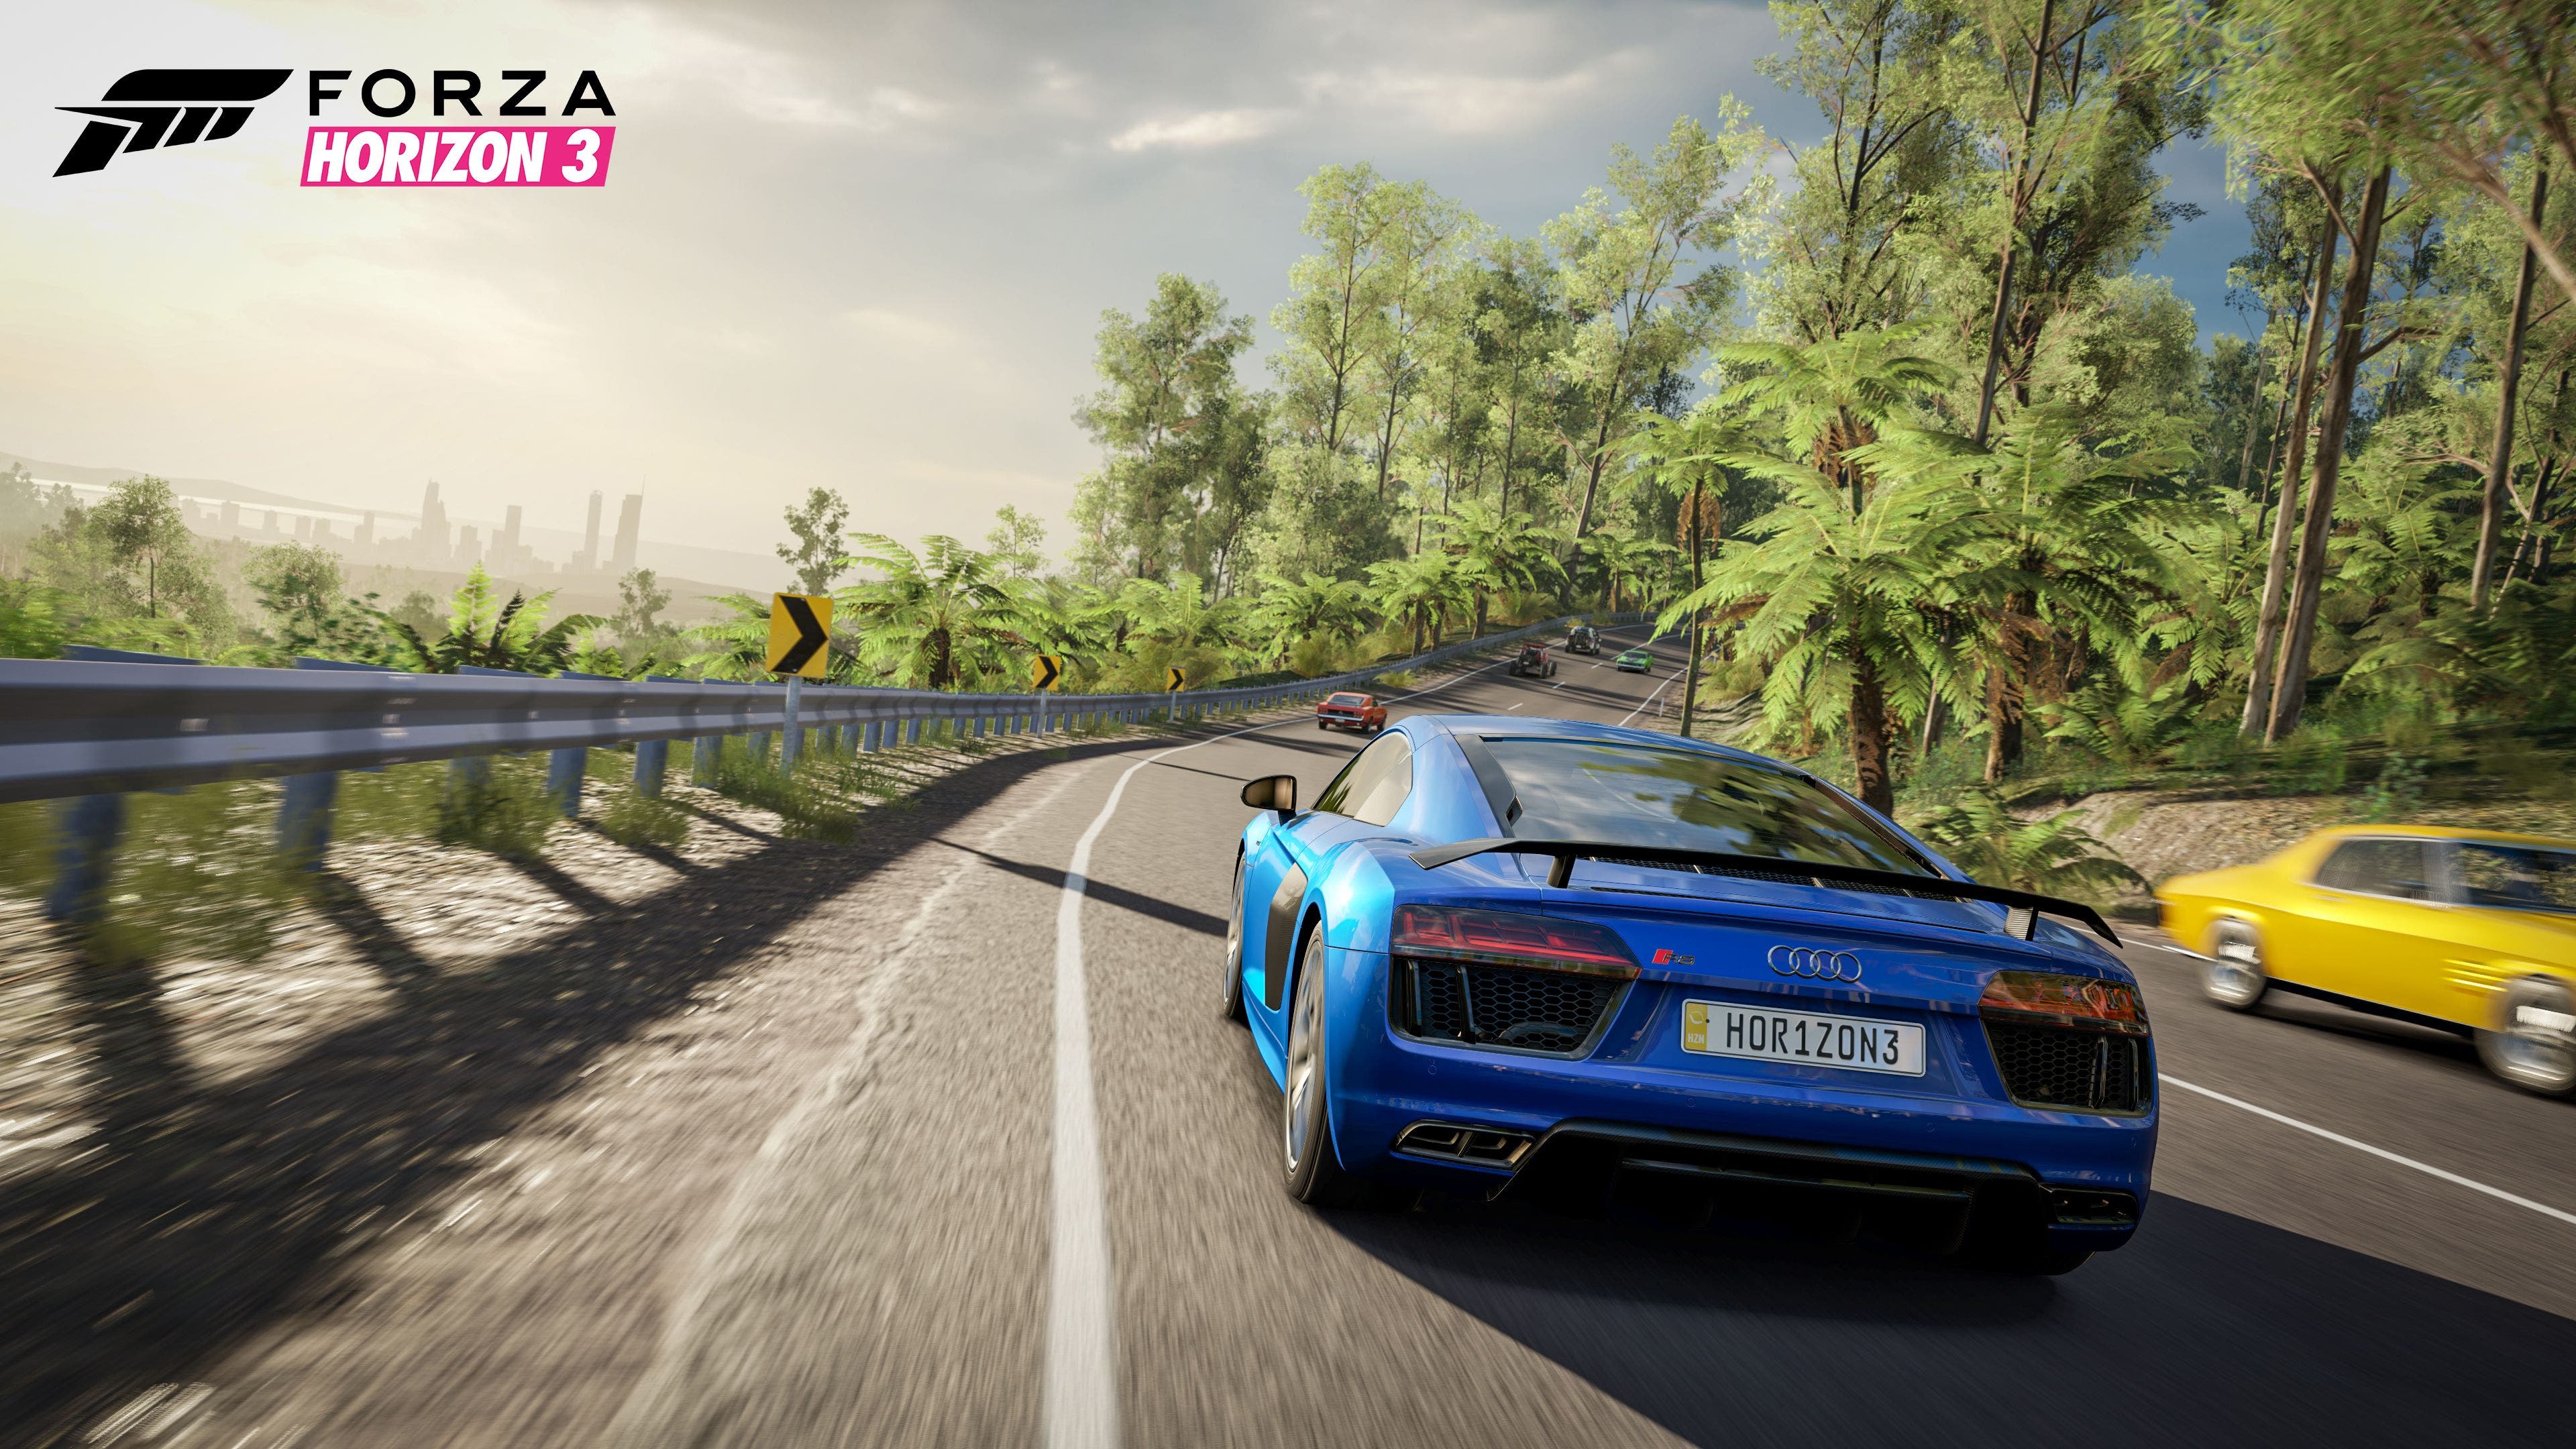 Imagen de La próxima entrega de la saga Forza Horizon será revelada durante el E3 2018